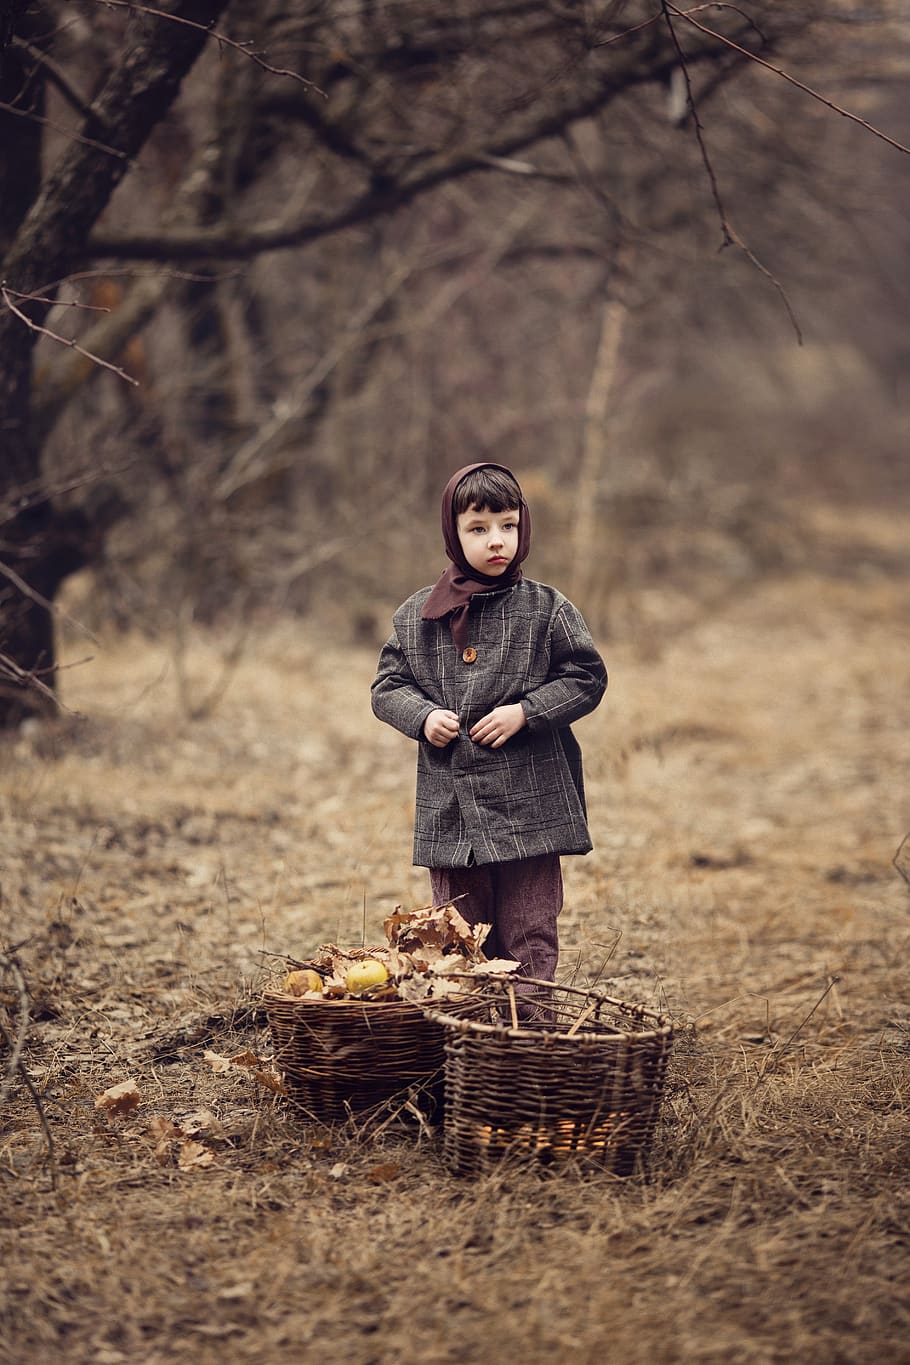 chico, la urss, manzanas, otoño, huerto de manzanas, guerra, después de la guerra, pobre, comunismo, canasta